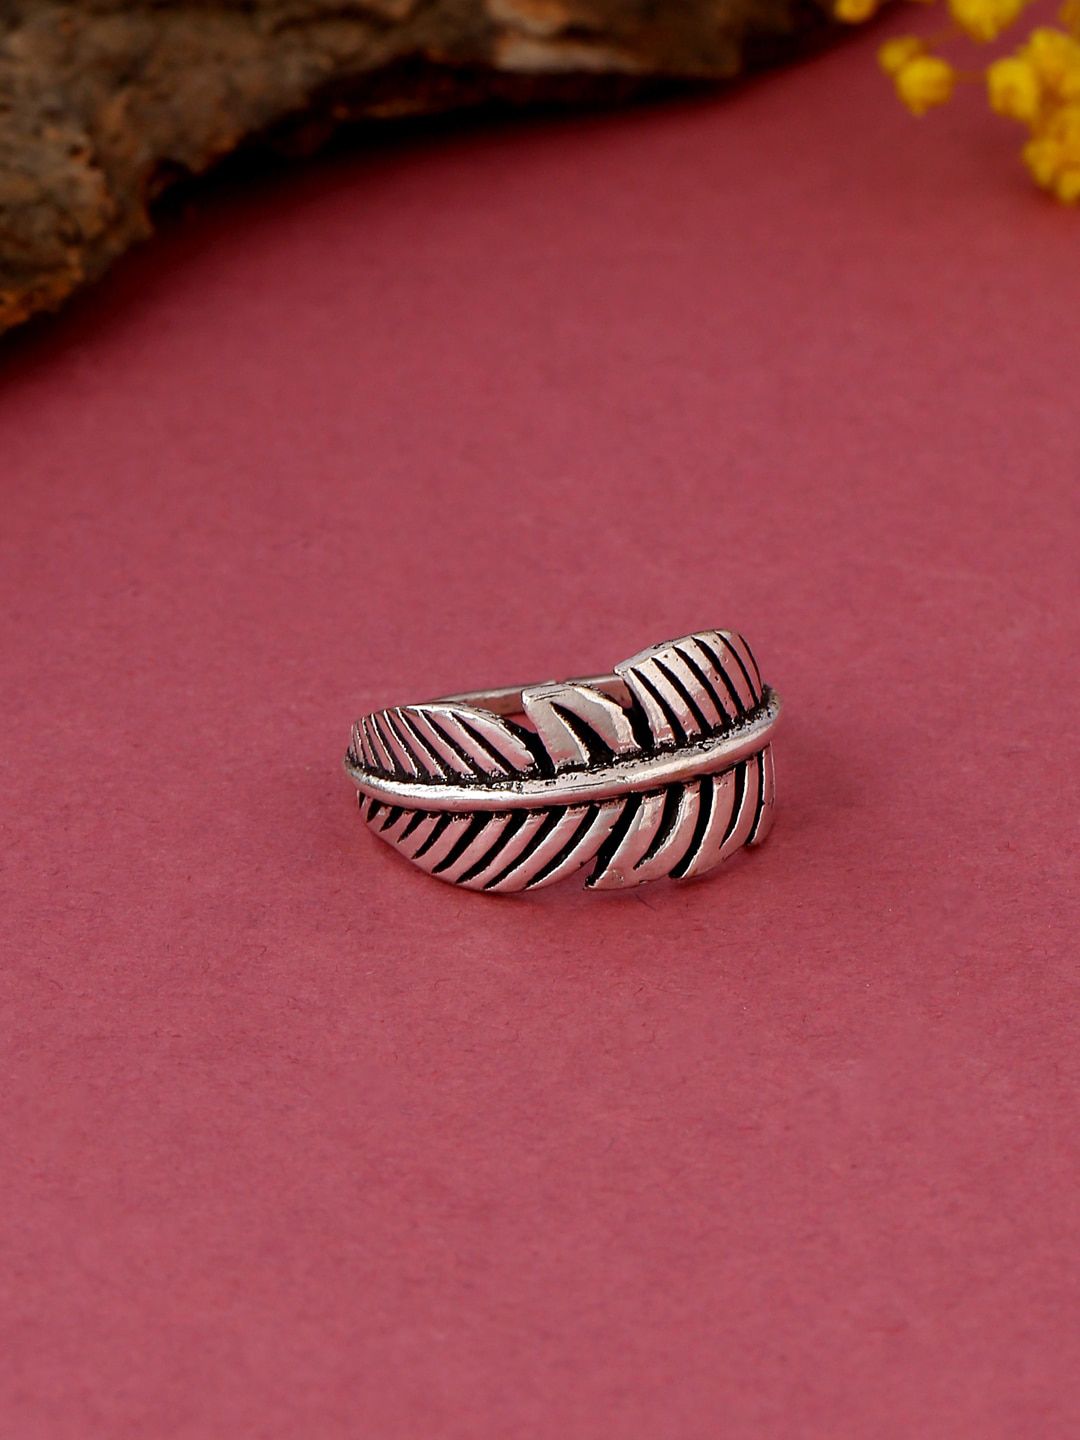 kashwini Silver-Plated Leaf Design Adjustable Finger Ring Price in India